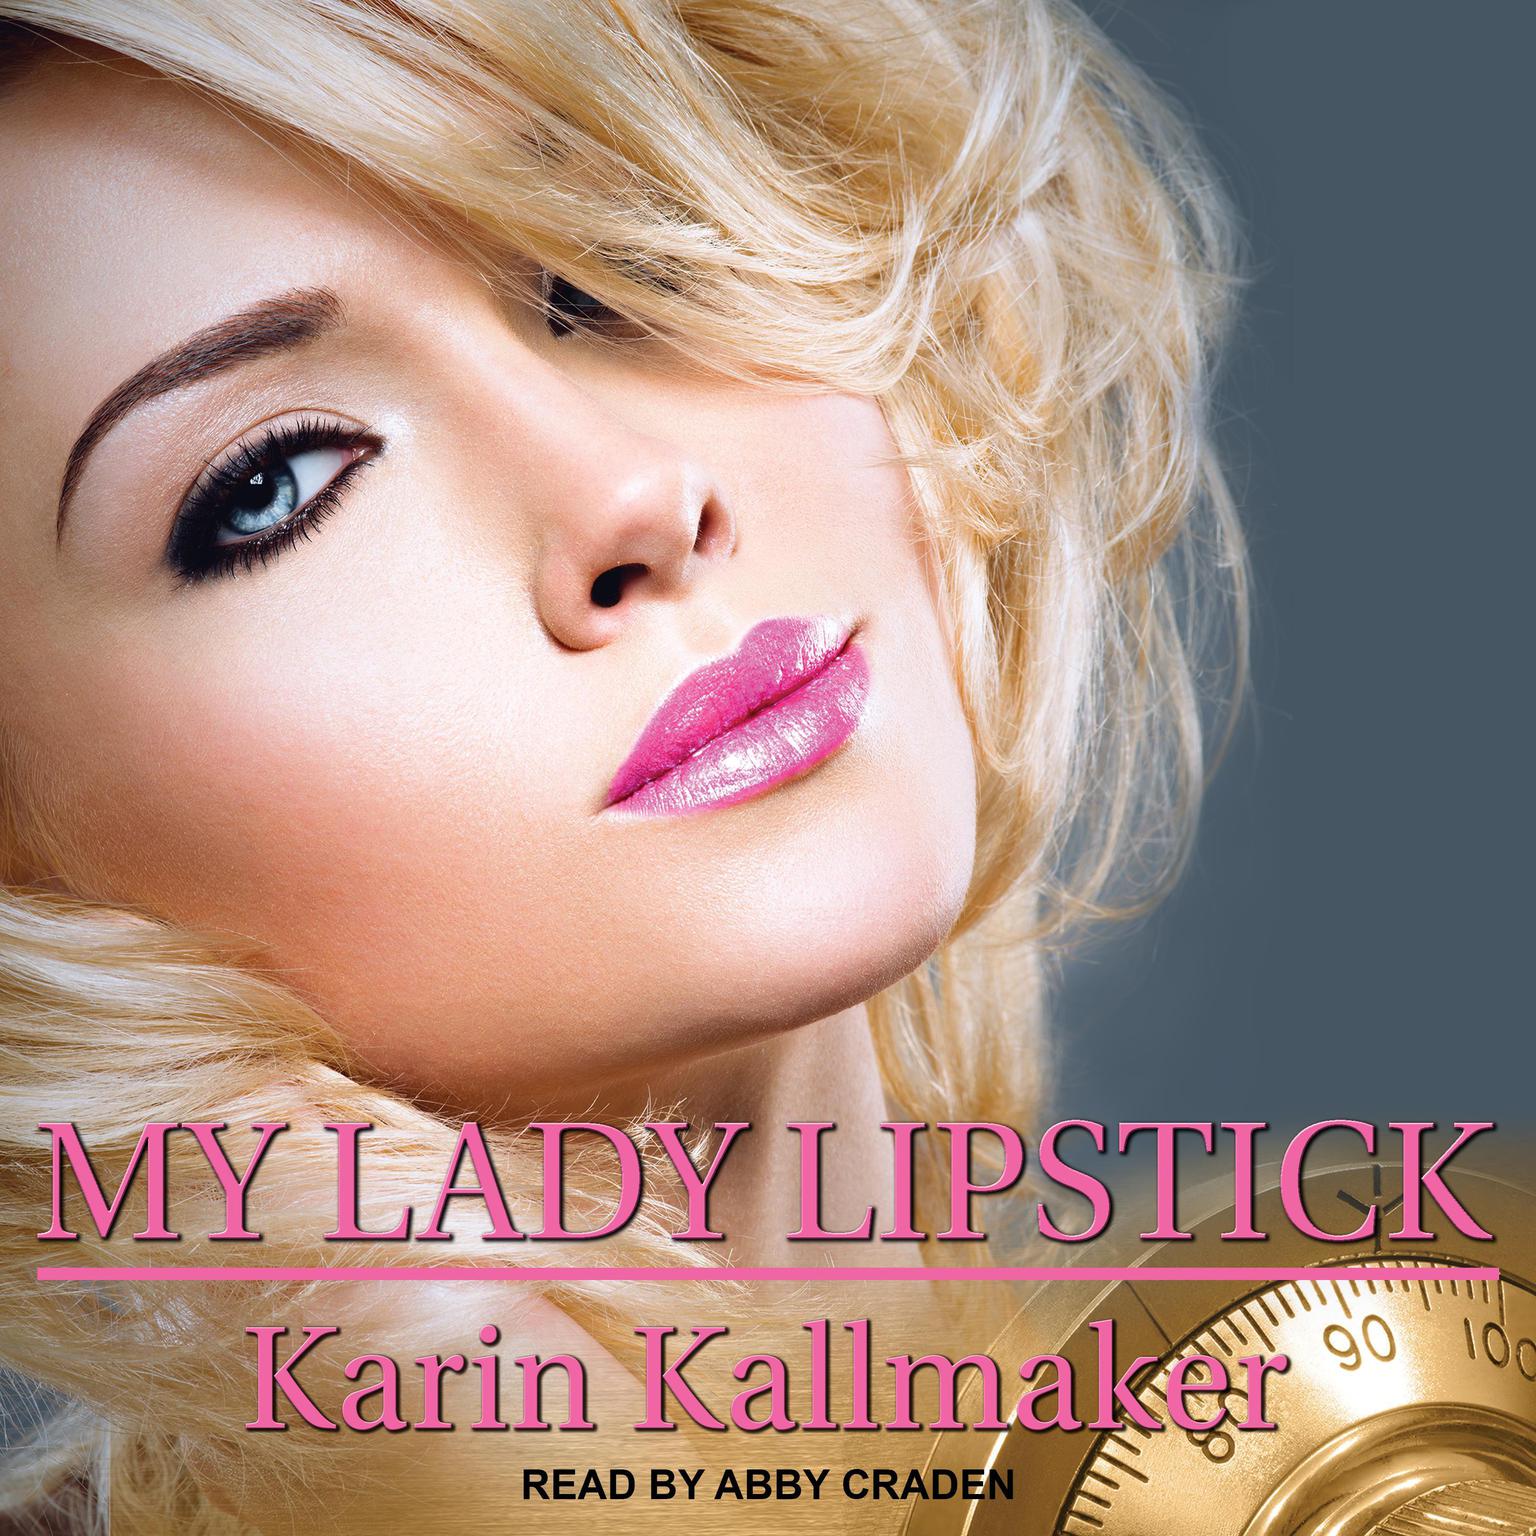 Karin Kallmaker: My lady lipstick (2018)